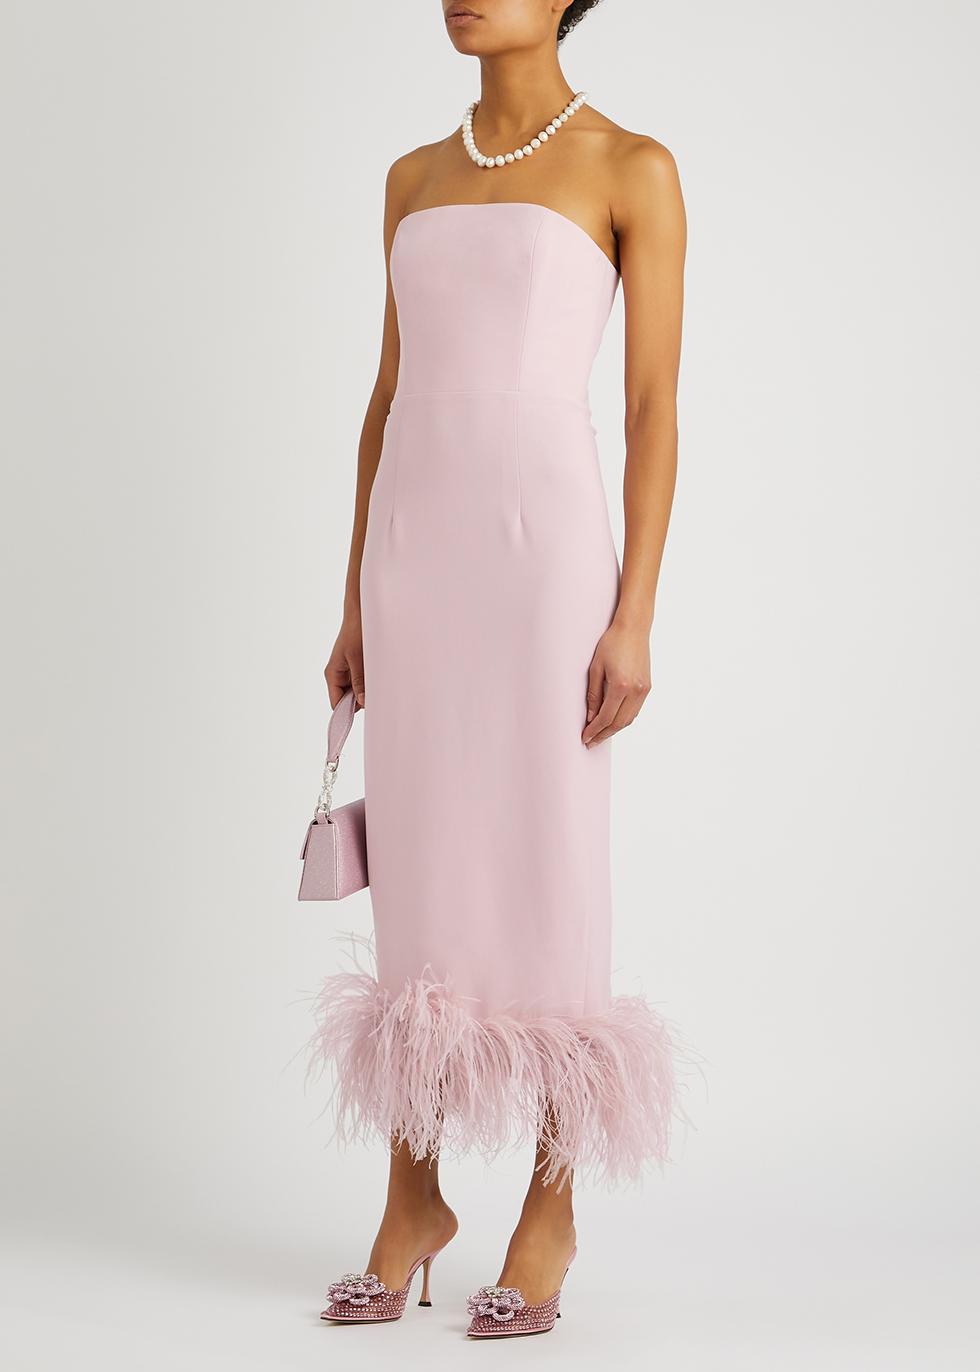 16Arlington Minelli Pink Feather-trimmed Midi Dress | Lyst